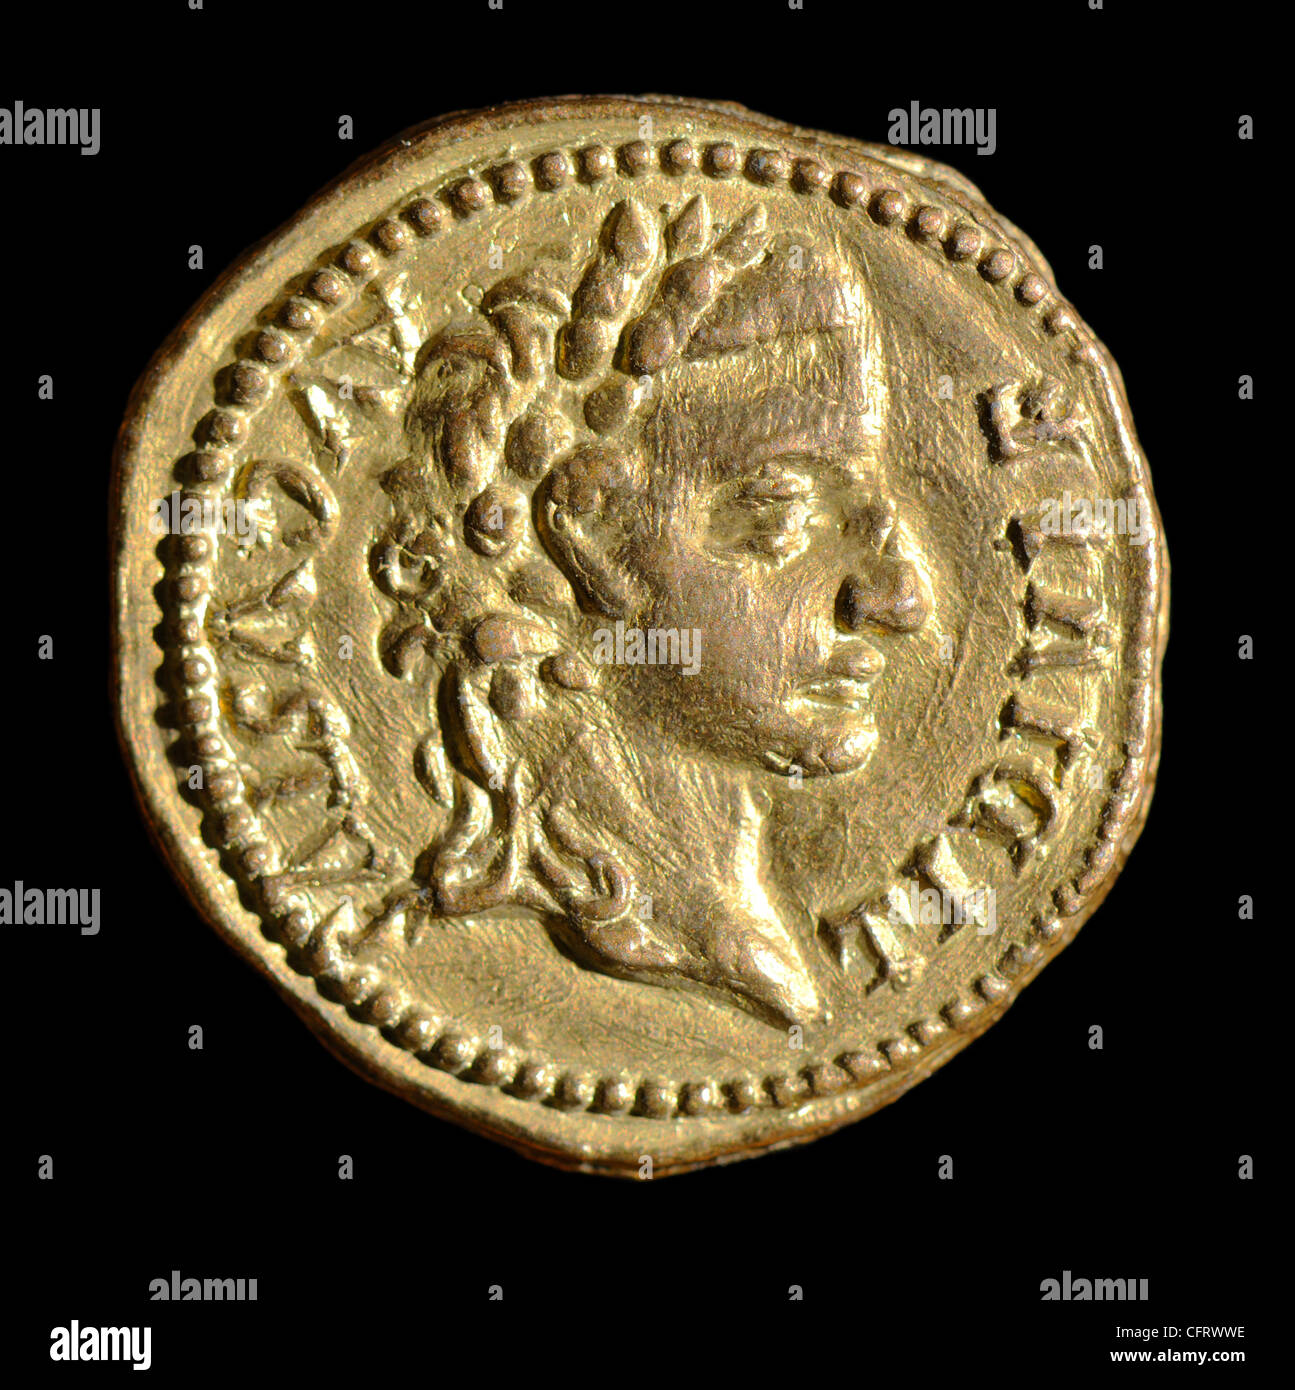 roman coins caesar augustus